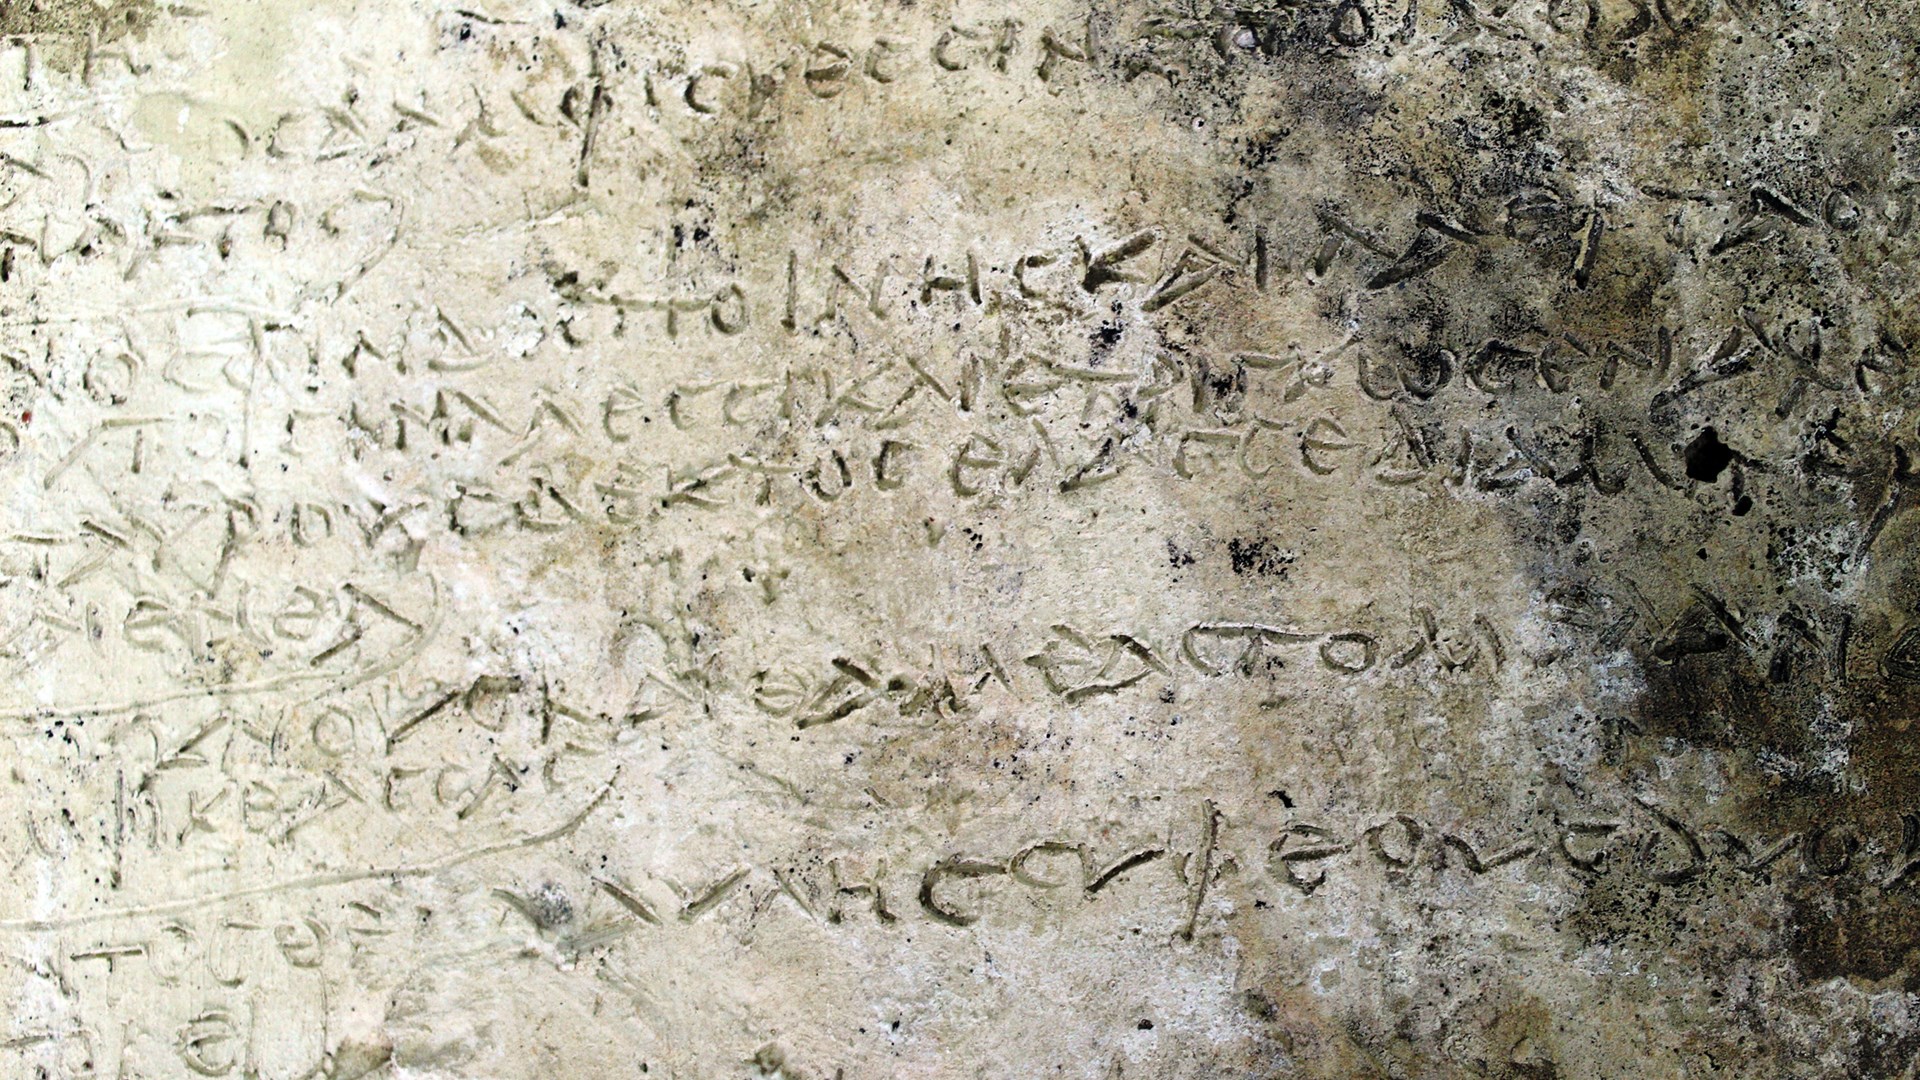 Πήλινη πλάκα με στίχους της Οδύσσειας ανακαλύφθηκε στην Ολυμπία – ΦΩΤΟ